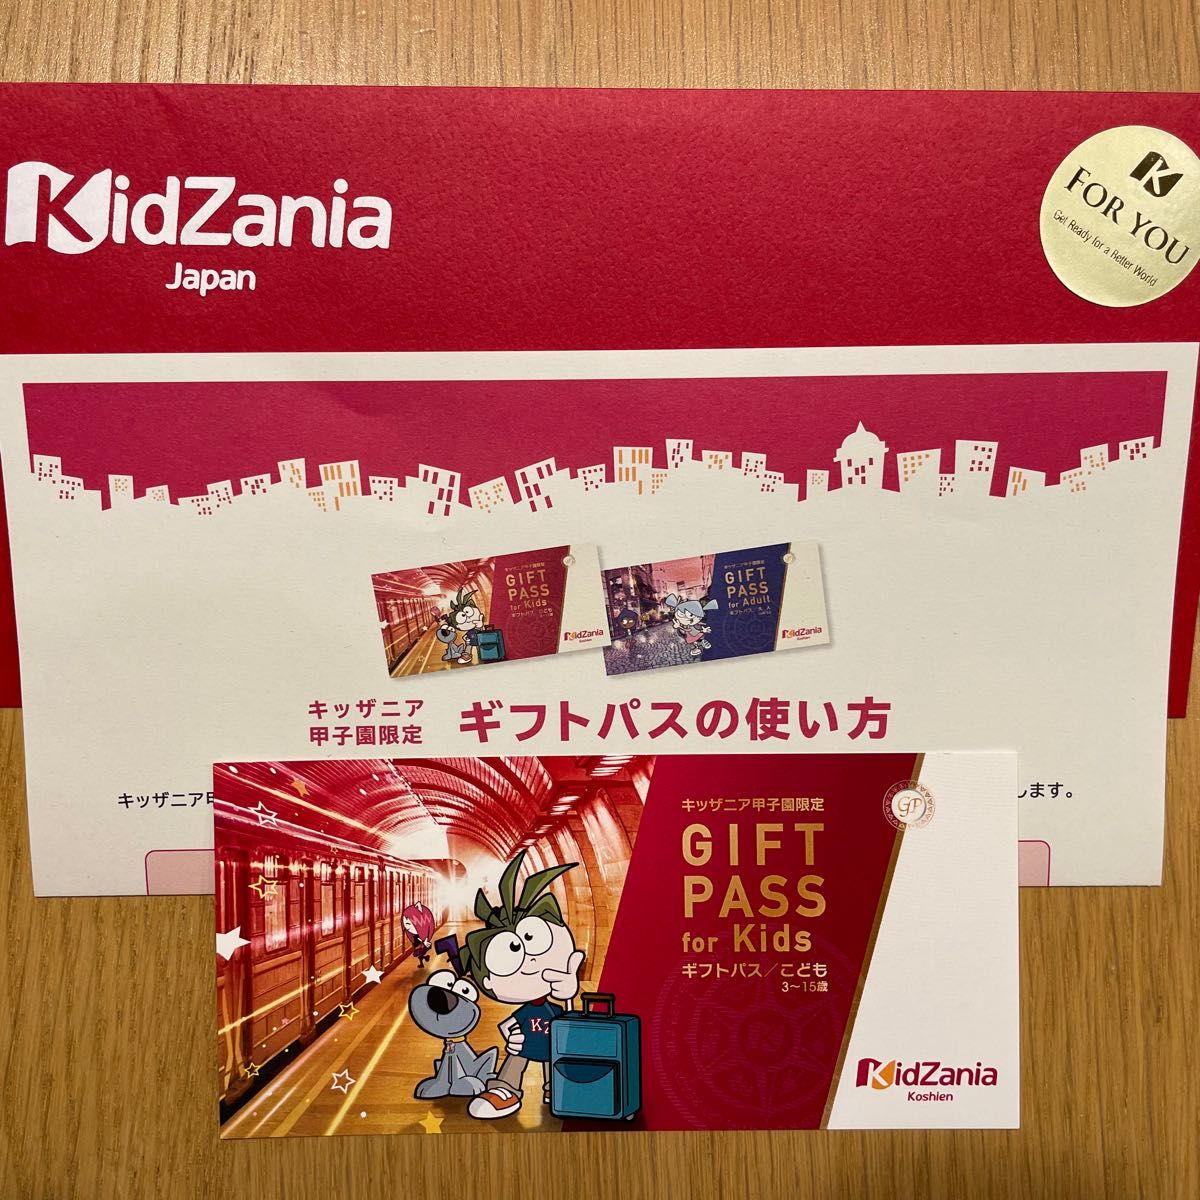 キッザニア 甲子園 ギフトパス 子供 使用期限 2025年3月31日 Kidzania Gift Pass Kids